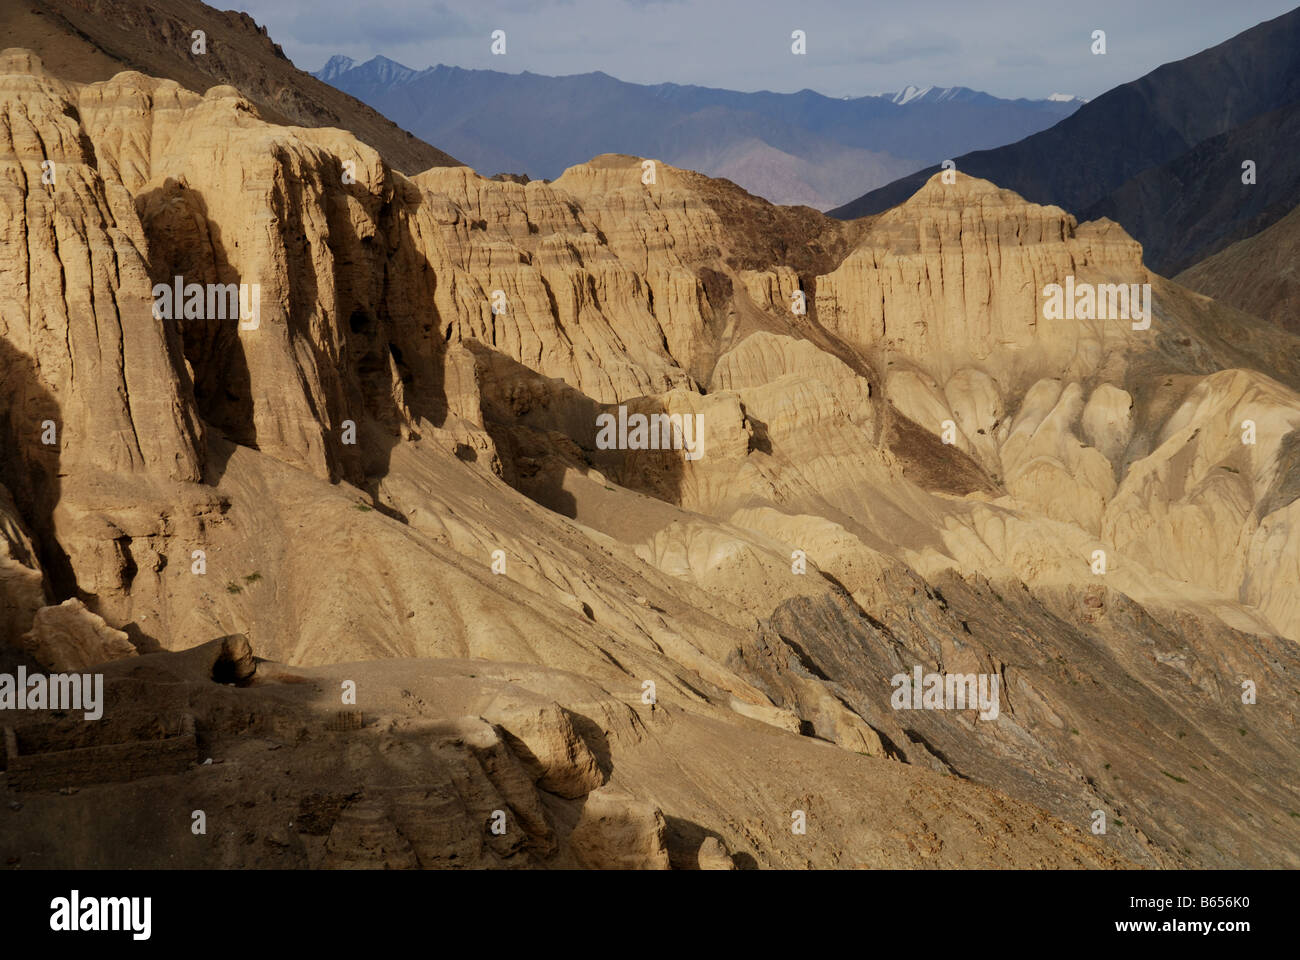 Das Gebiet des Tals des Mondes in der Nähe von Gästehaus in Ladakh Indien war ein ehemaliger See nach Erosion, Erosion See. Stockfoto